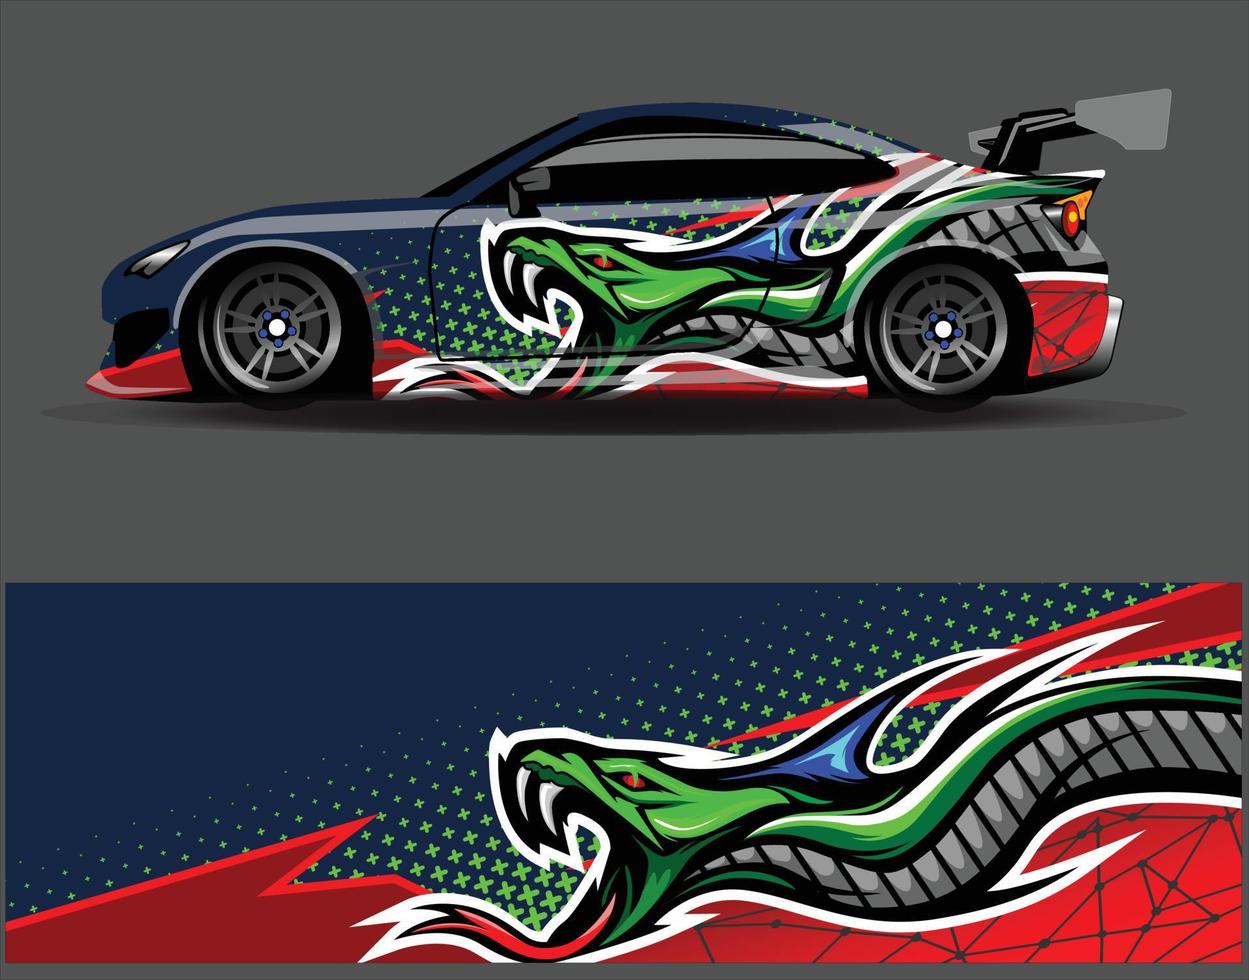 Diseños de fondo de carreras de rayas abstractas gráficas para aventuras de carreras de rally de vehículos y librea de carreras de autos vector